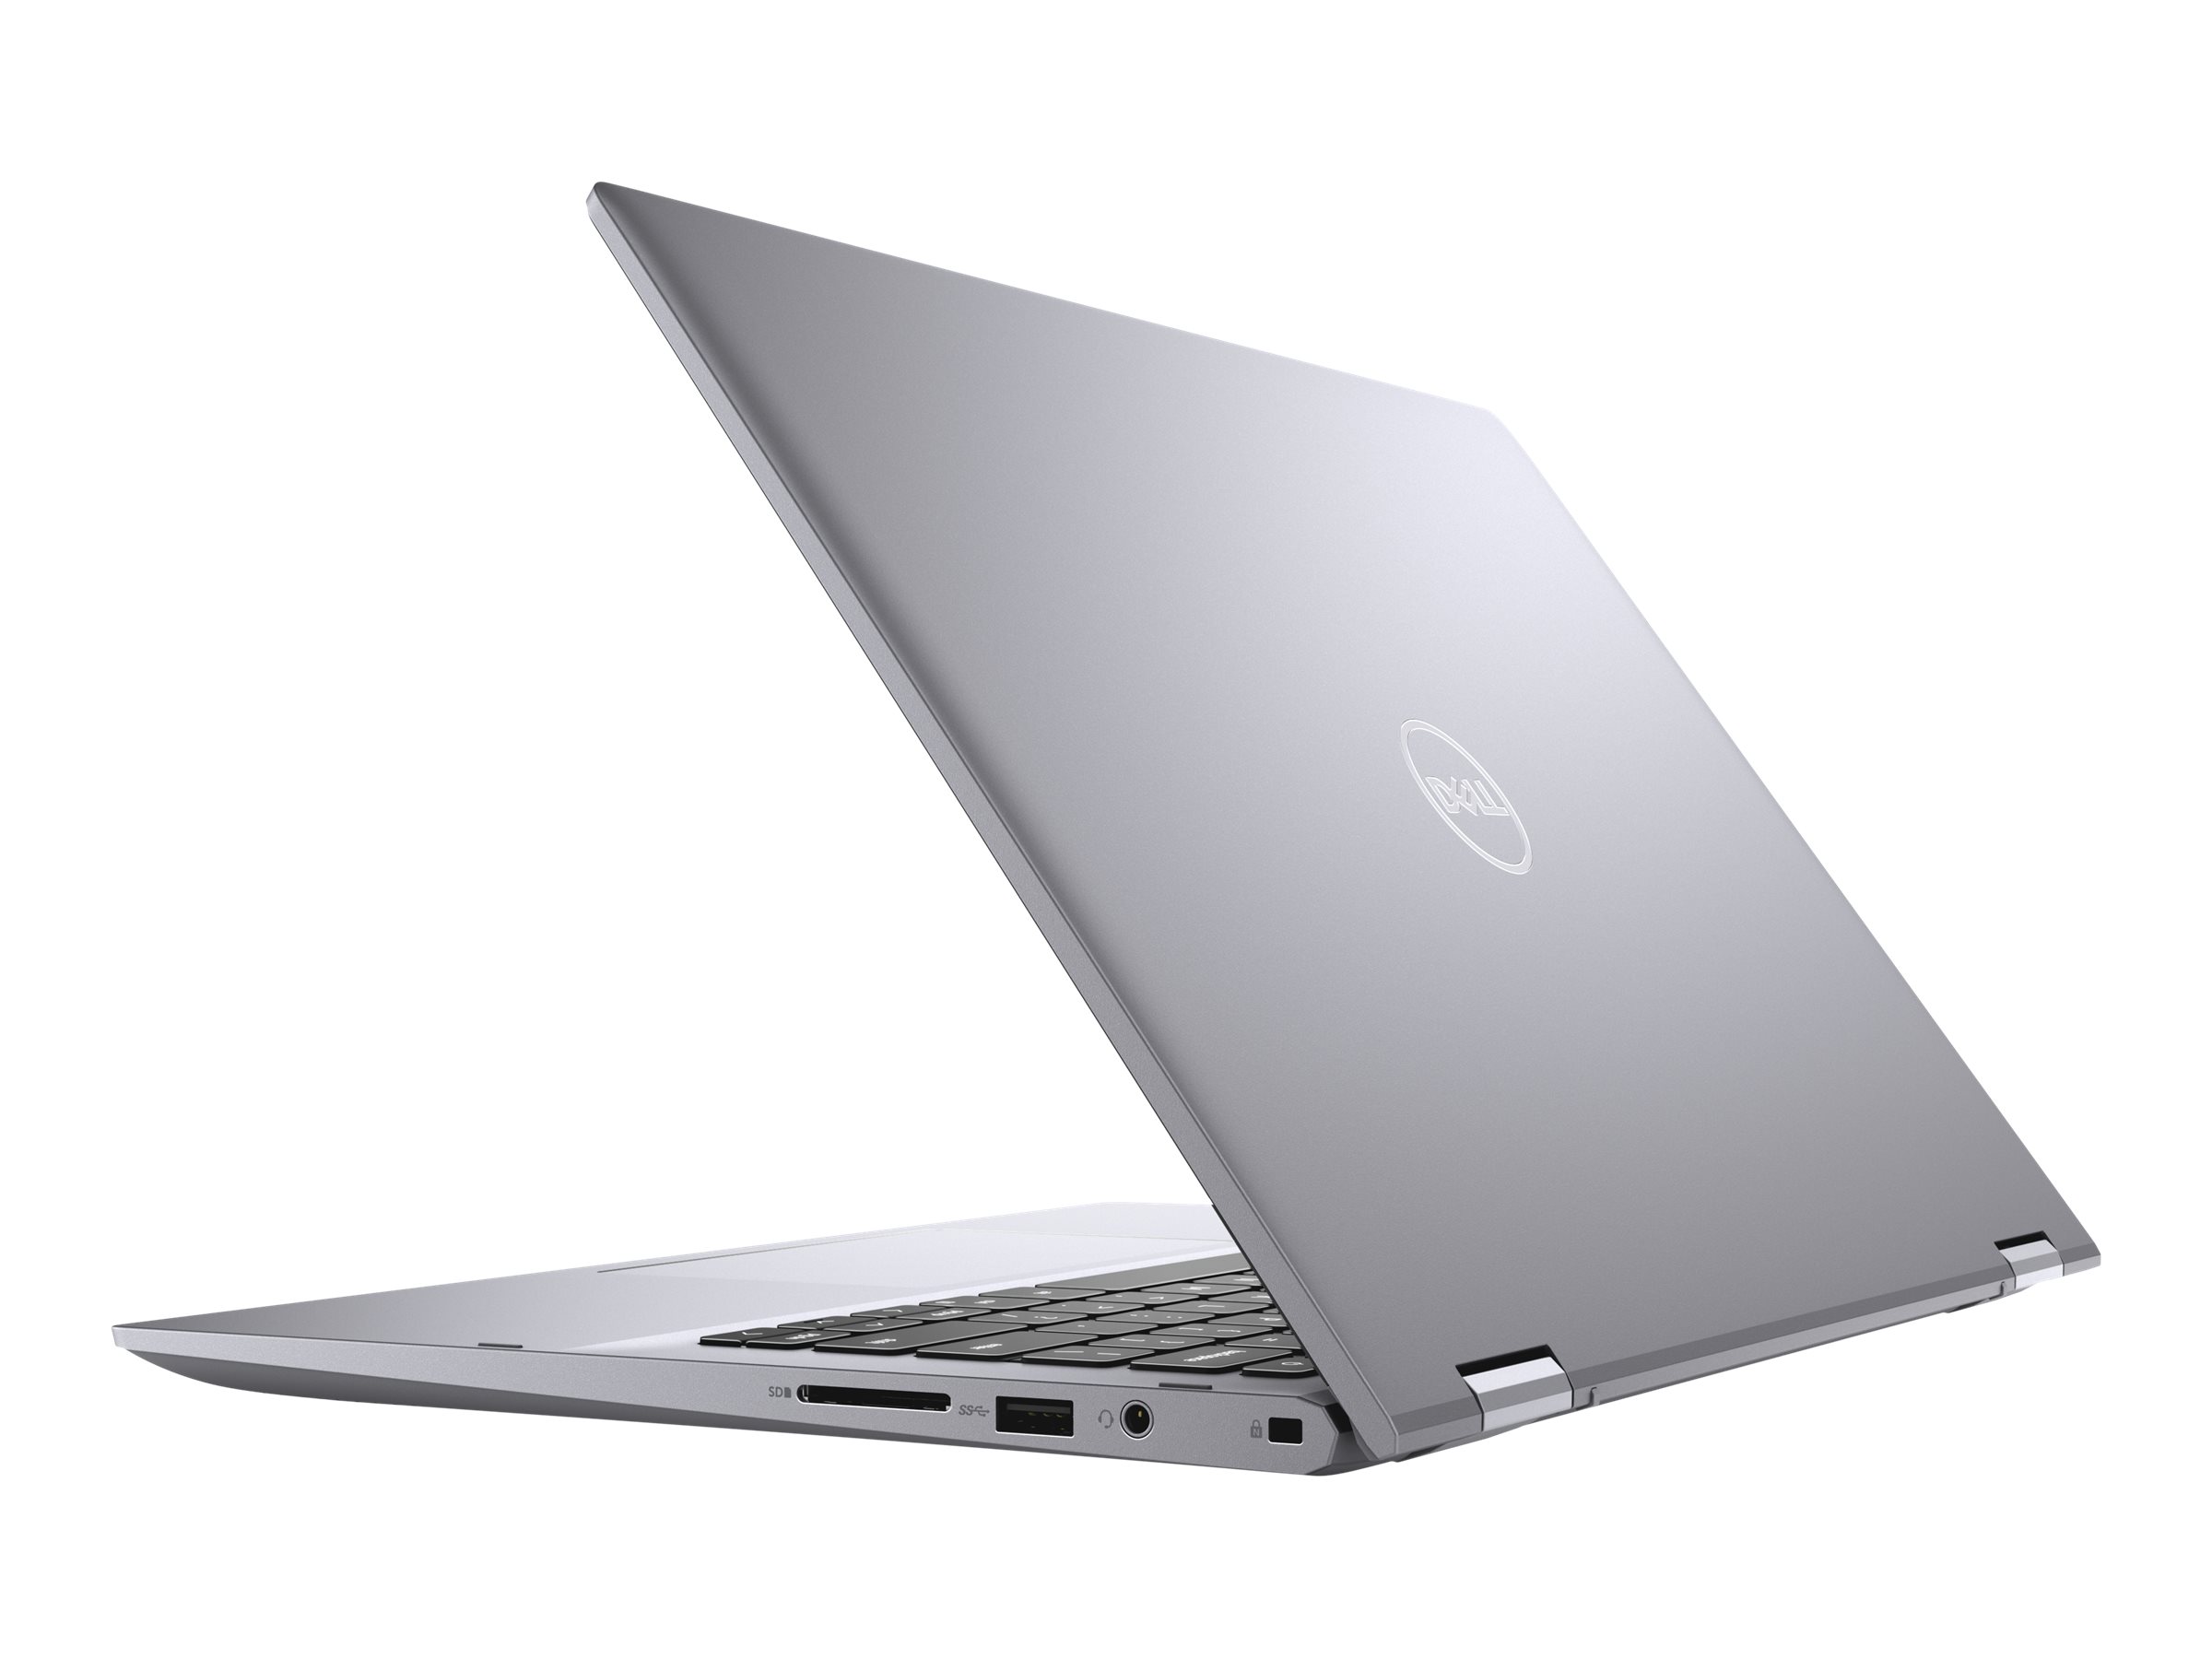 Laptop Dell Inspiron 5406 Core i5-1135G7 / RAM 8GB / SSD 256GB / 14 inch Touch / Win 10 - Hàng Nhập Khẩu Mỹ